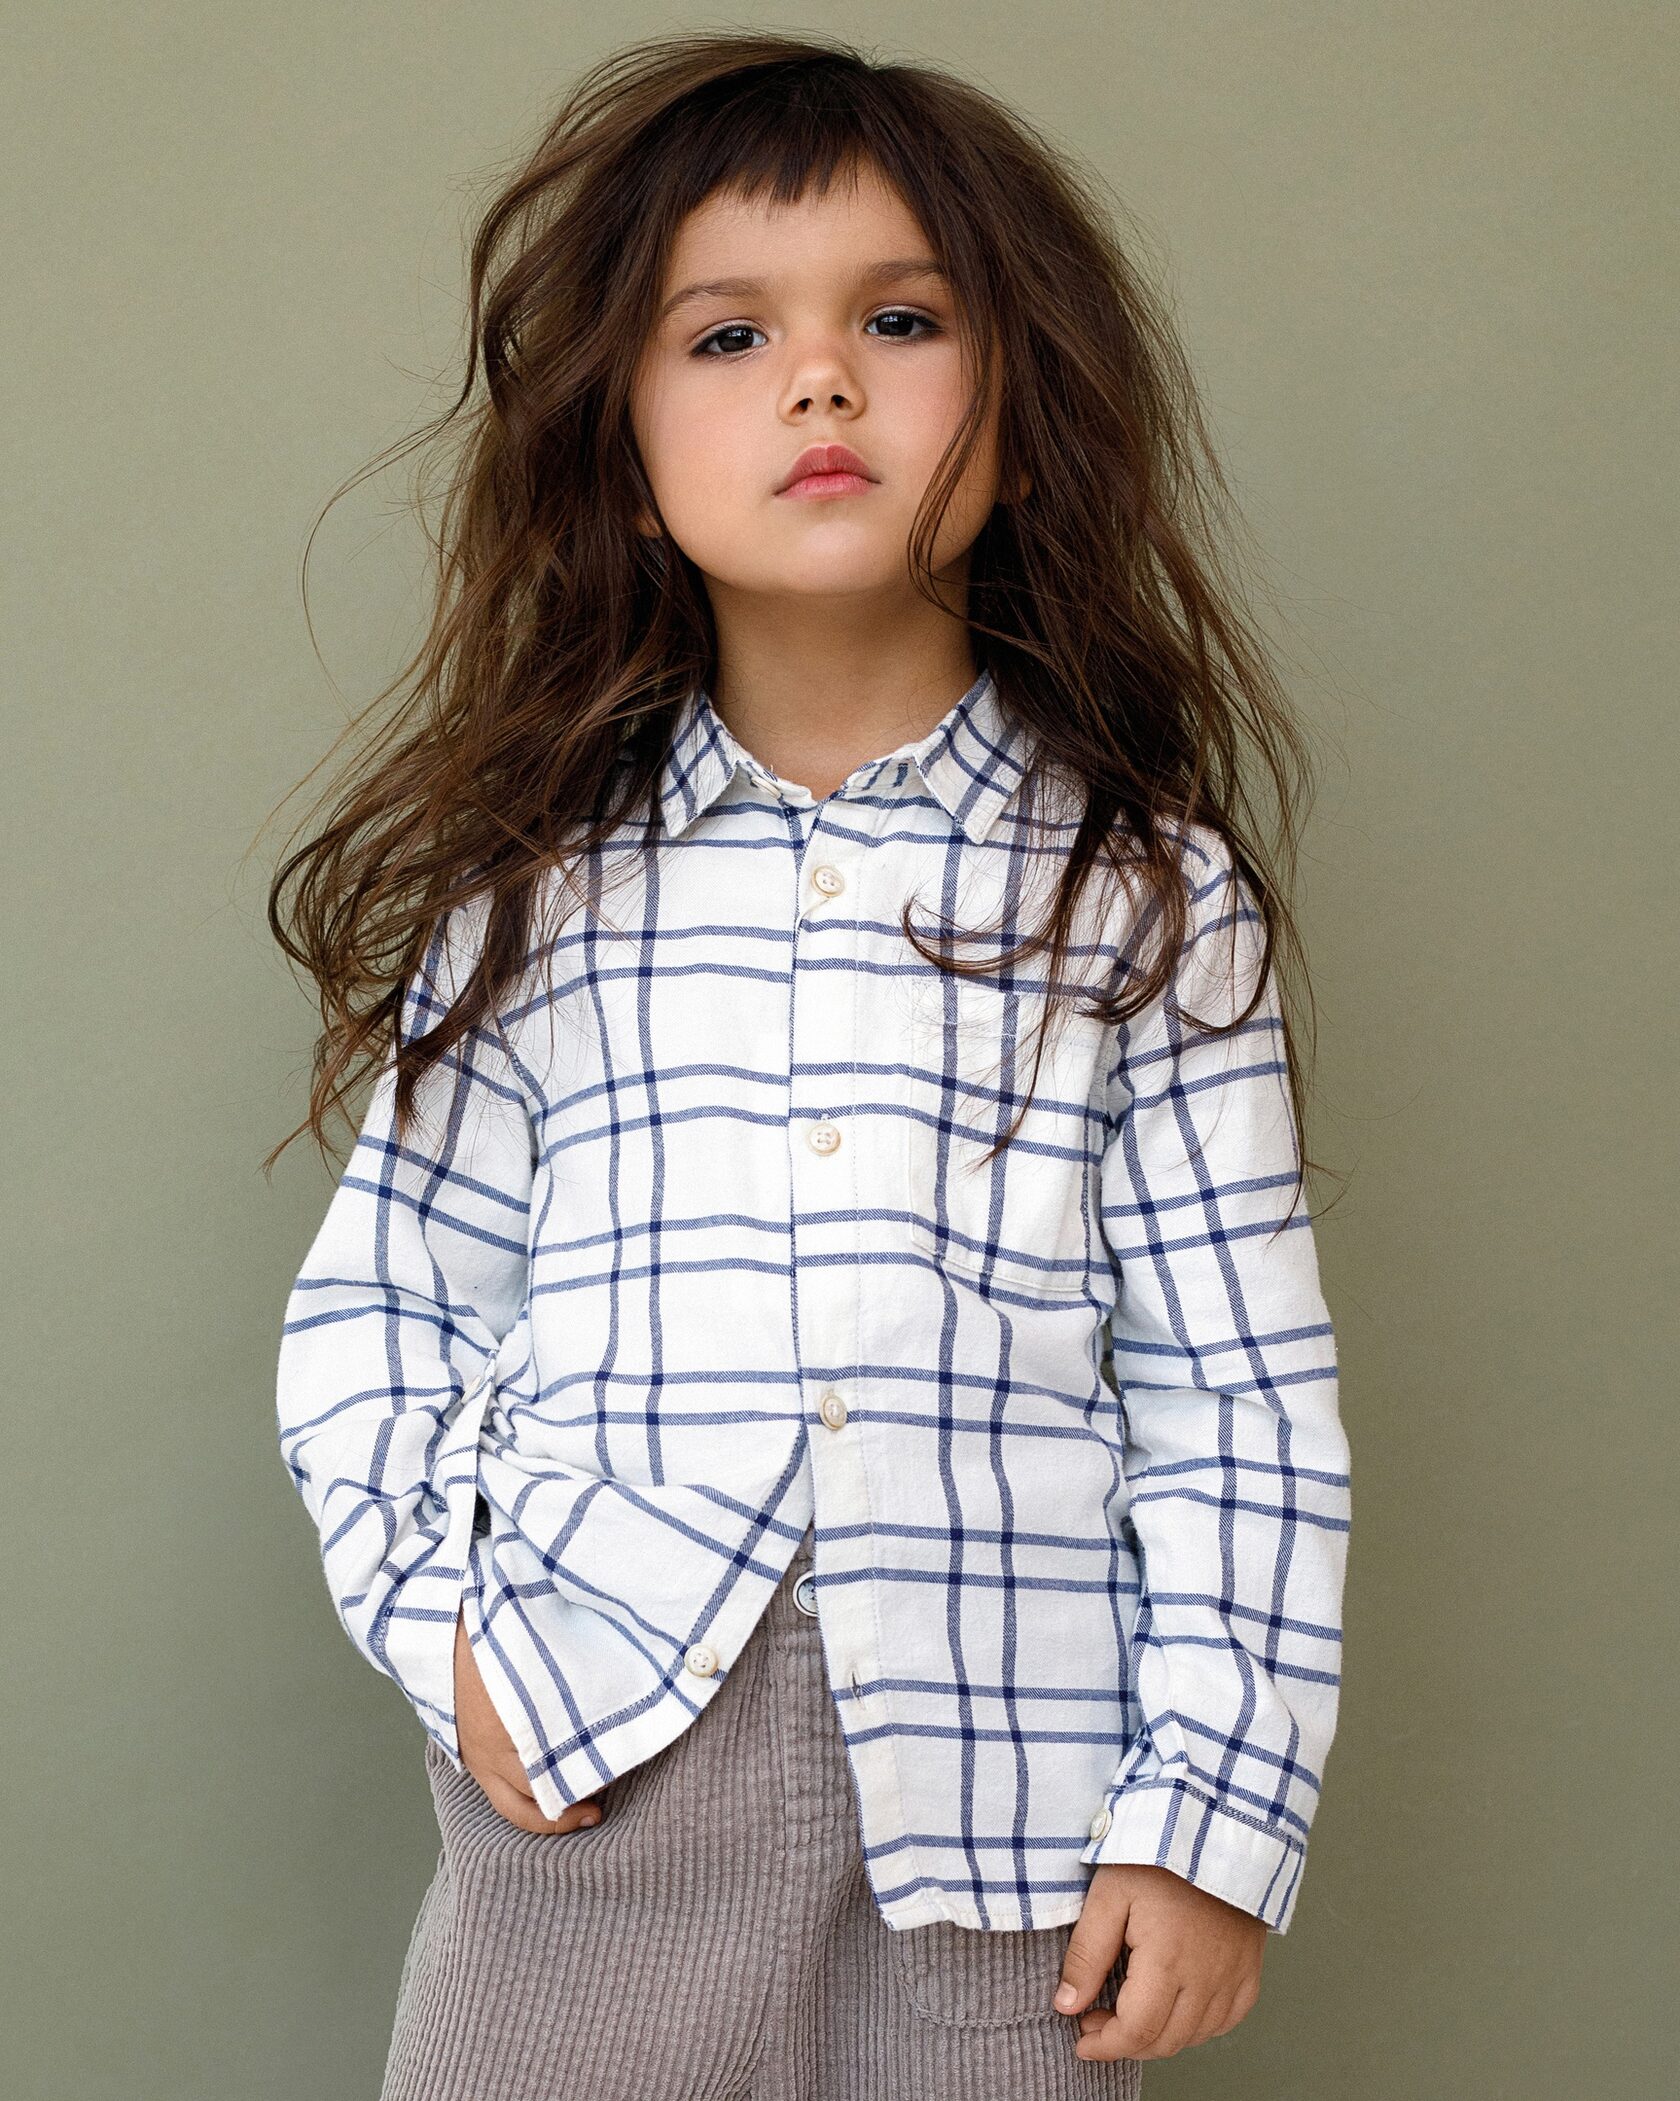 Фото одежды для маркетплейсов на девочке